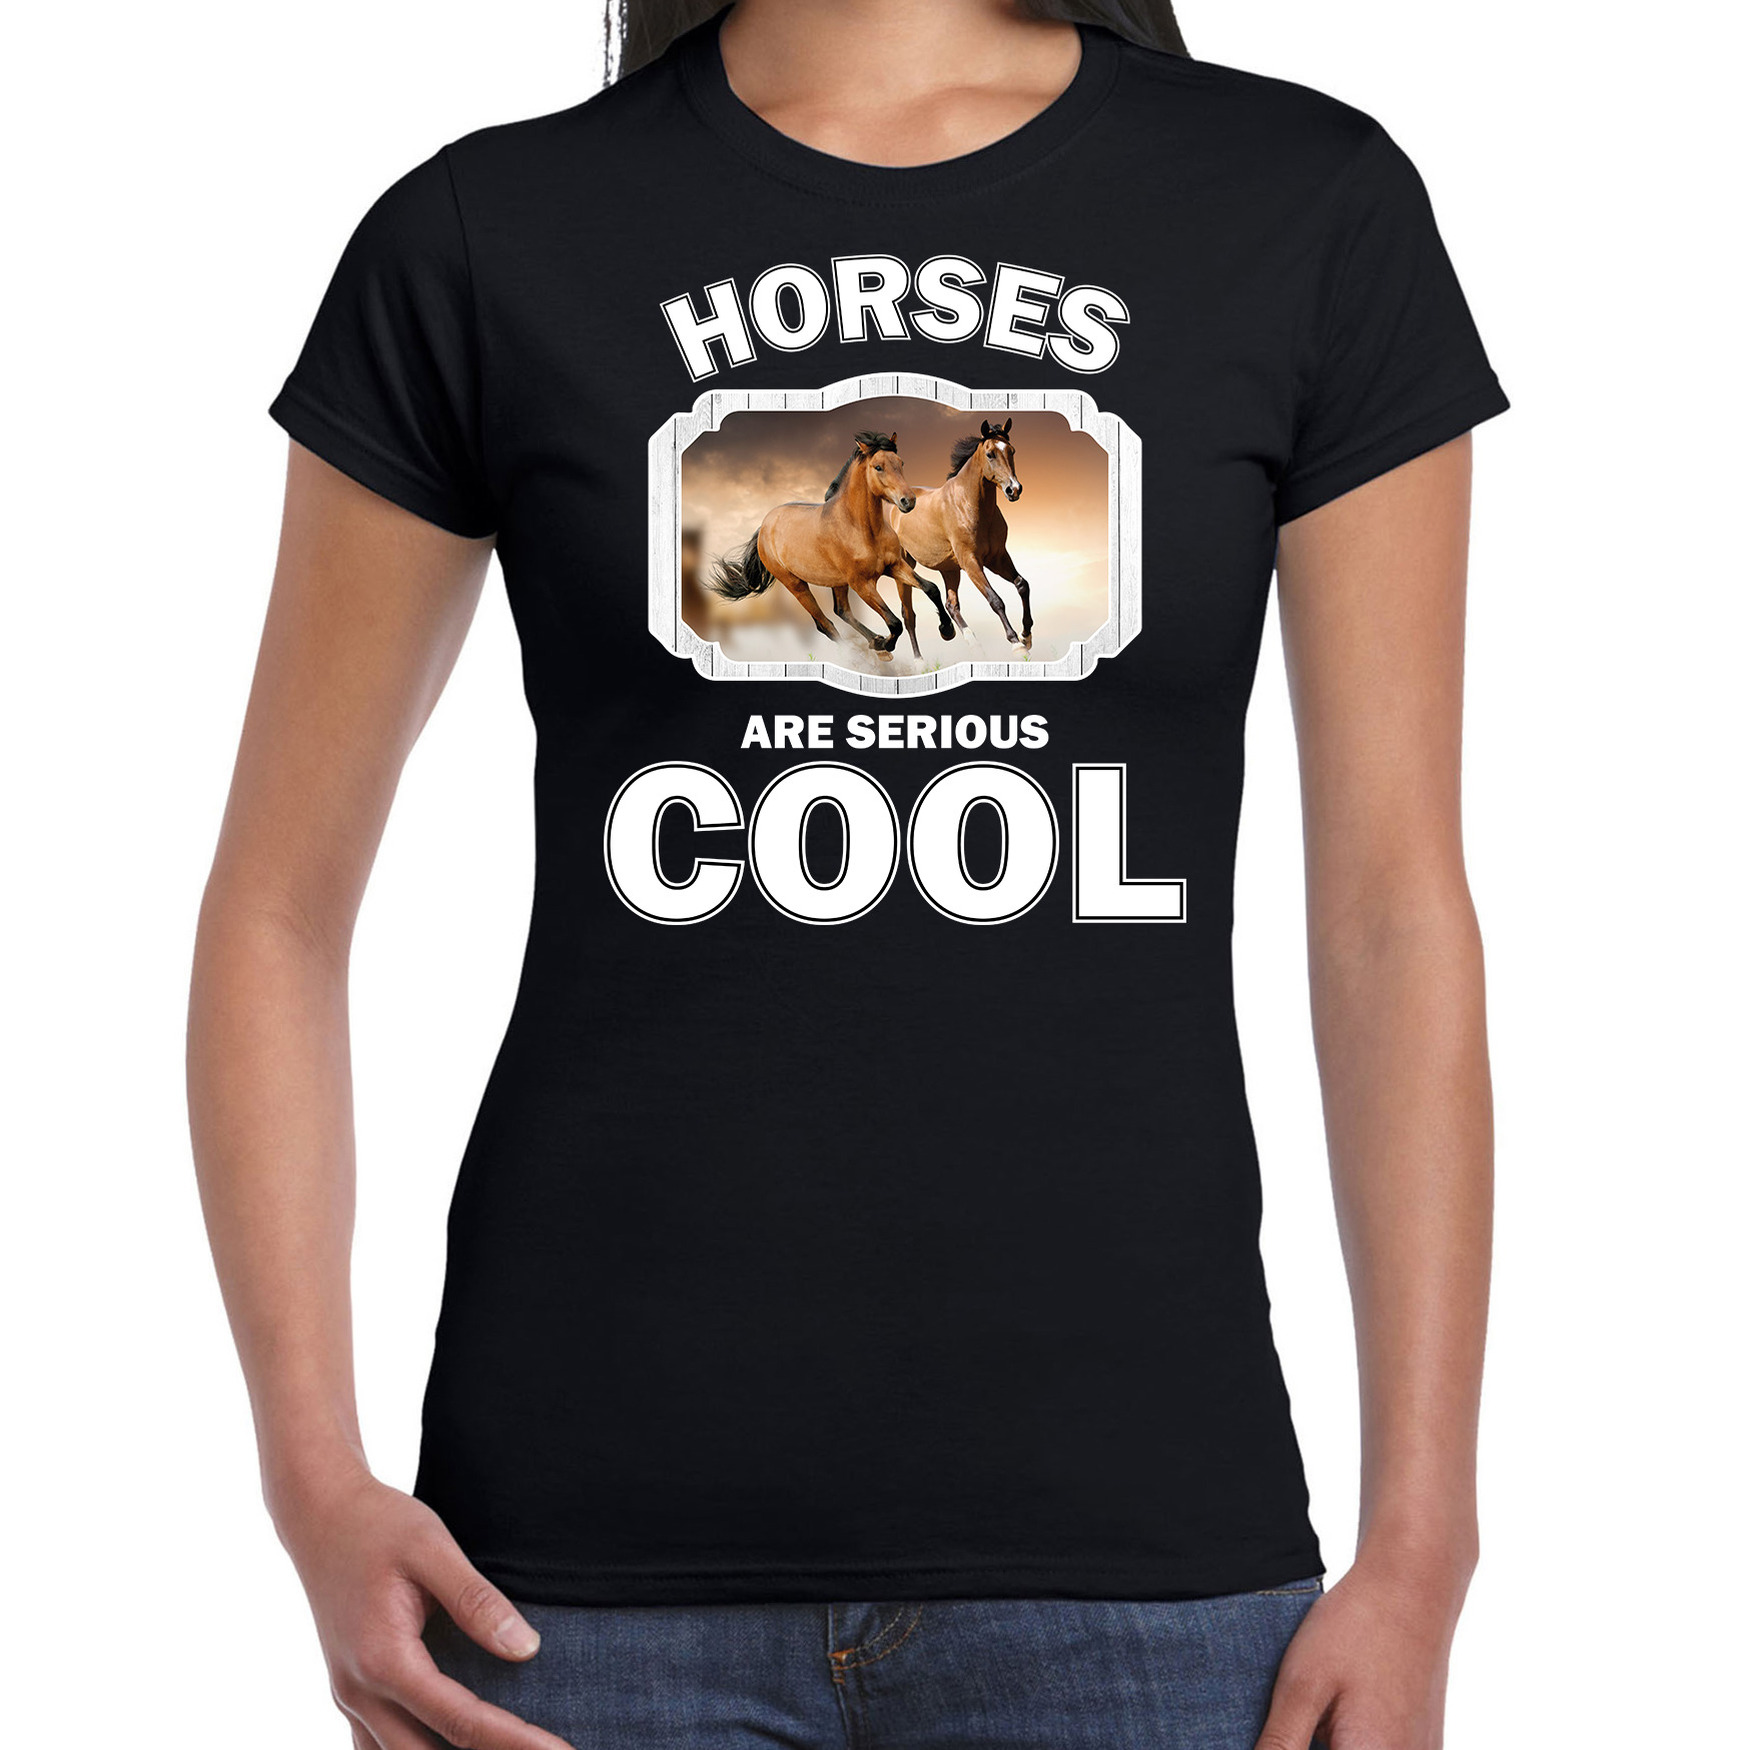 Dieren bruin paard t-shirt zwart dames - horses are cool shirt